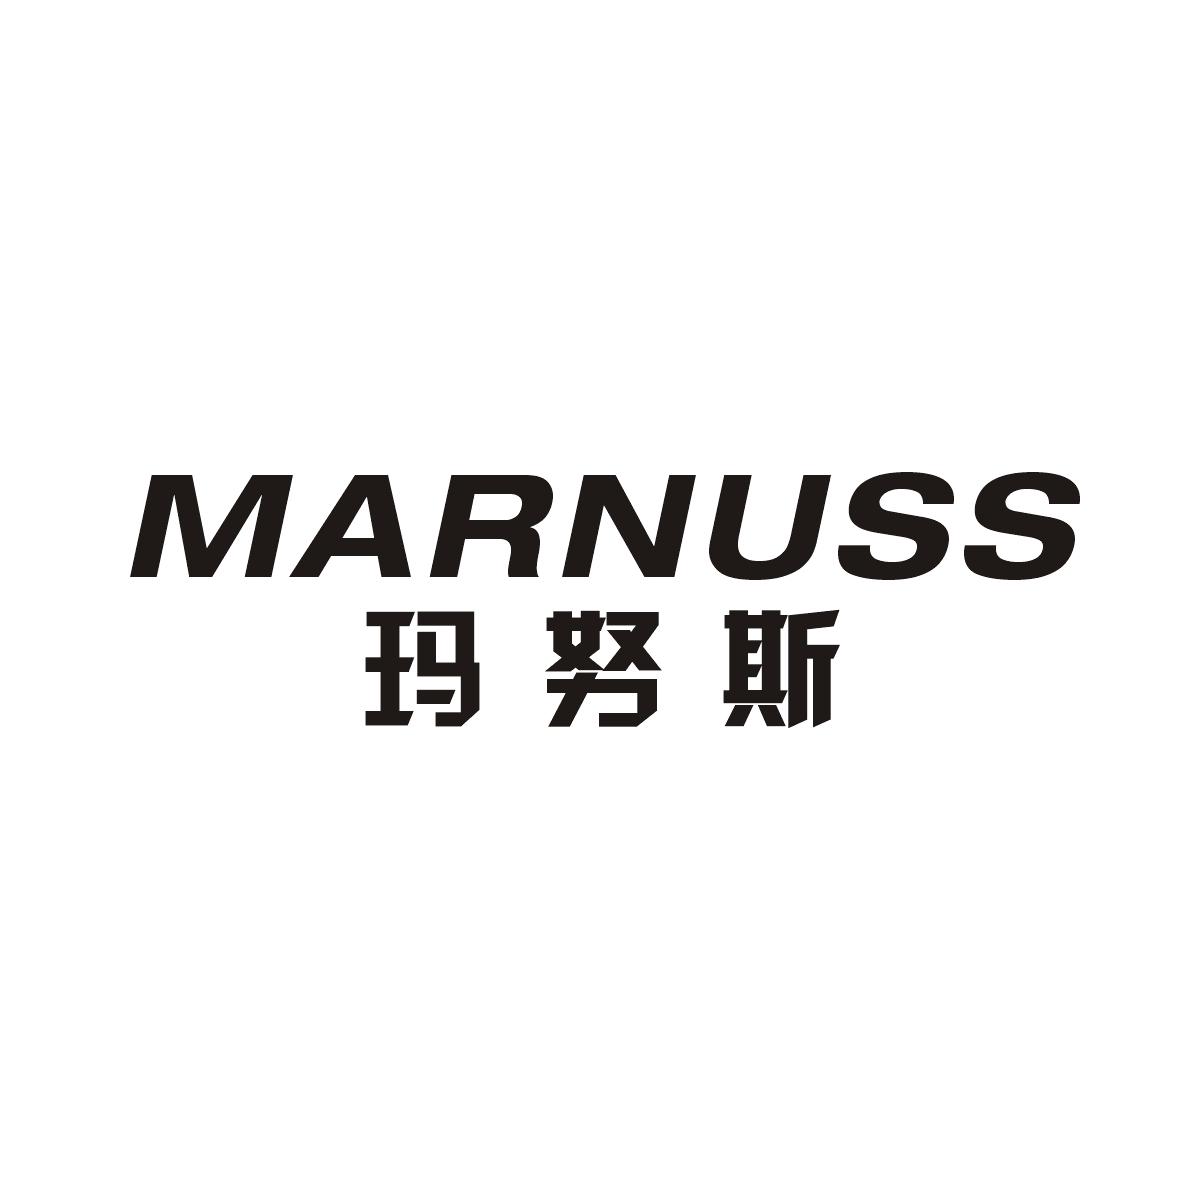 玛努斯 MARNUSS商标图片